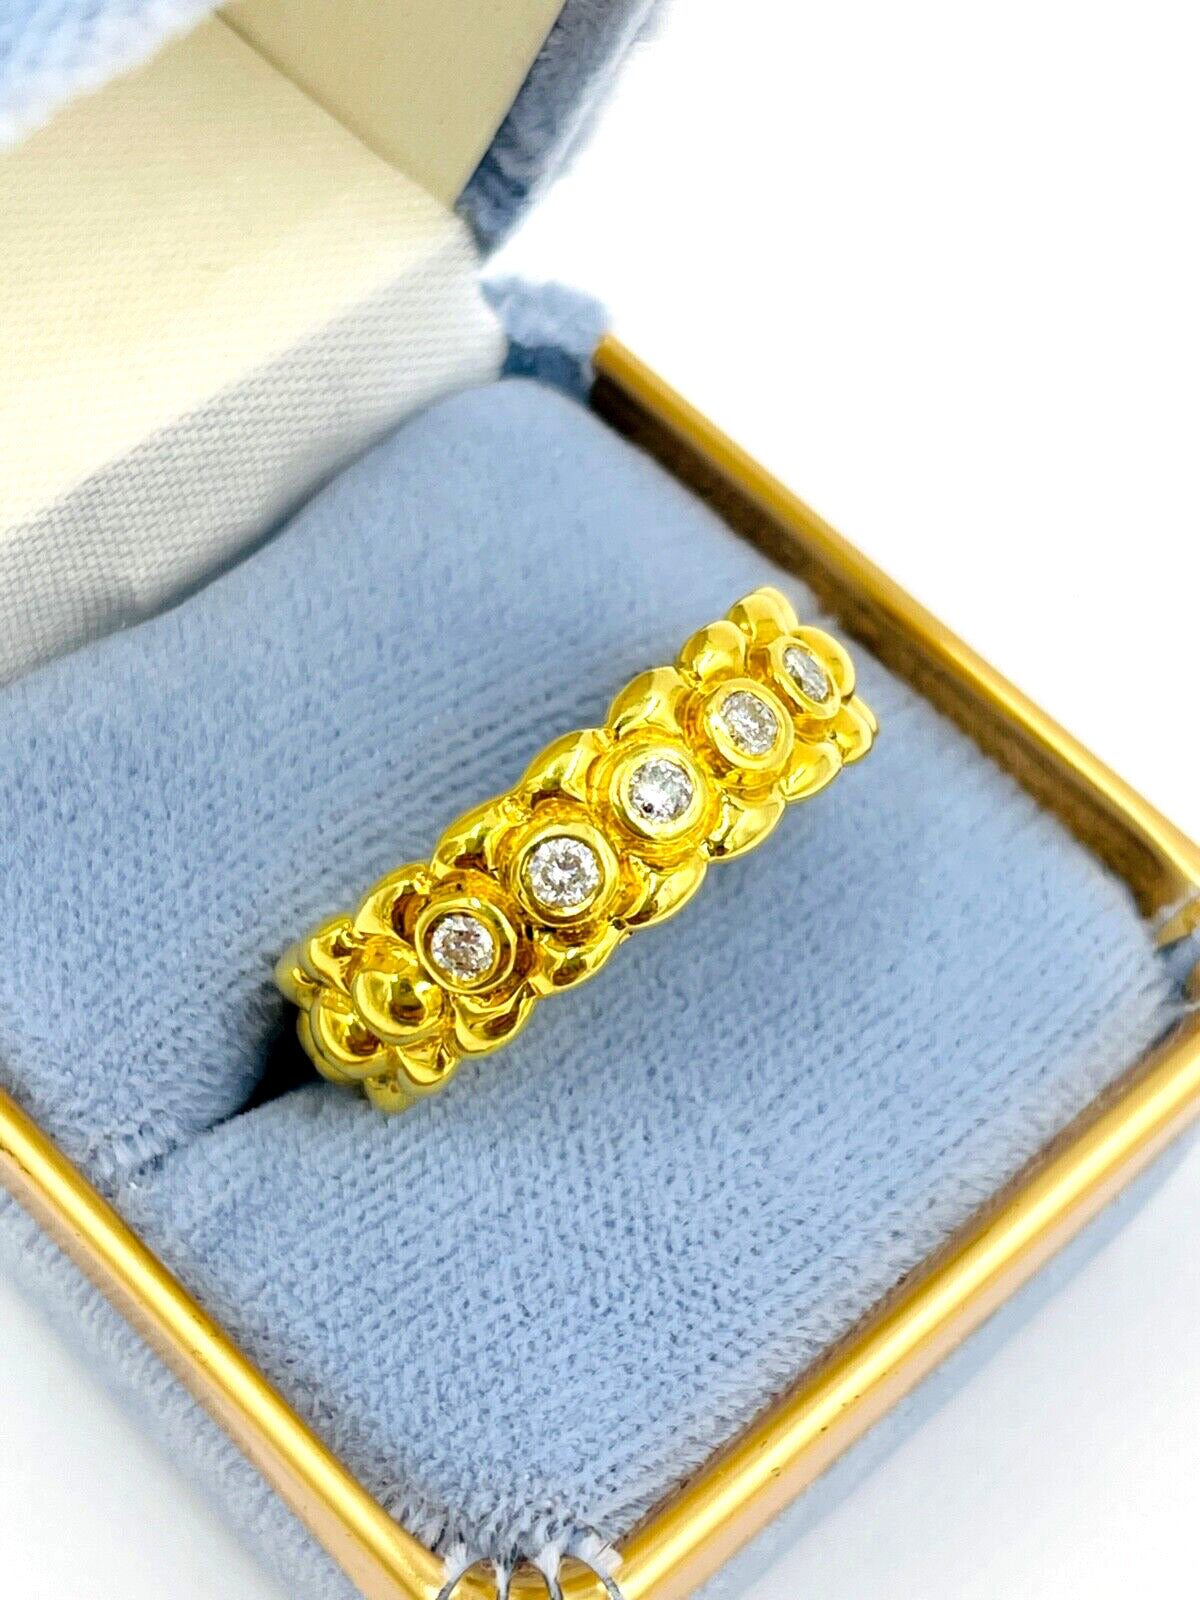 Men's 18k Diamond Engagement Ring Designer signed .24cts VS